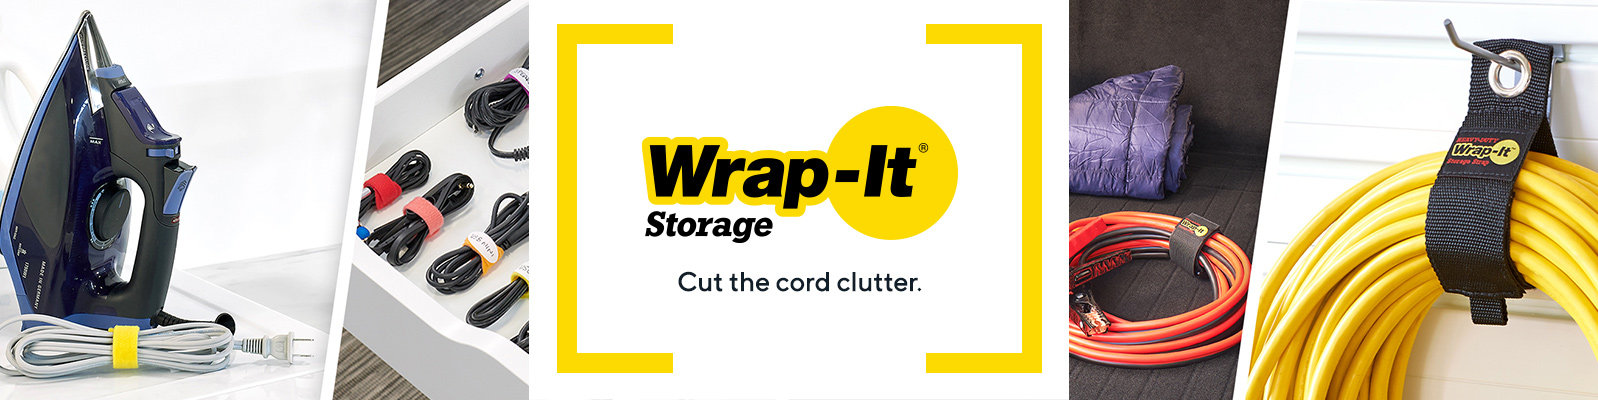 Wrap-It Storage 